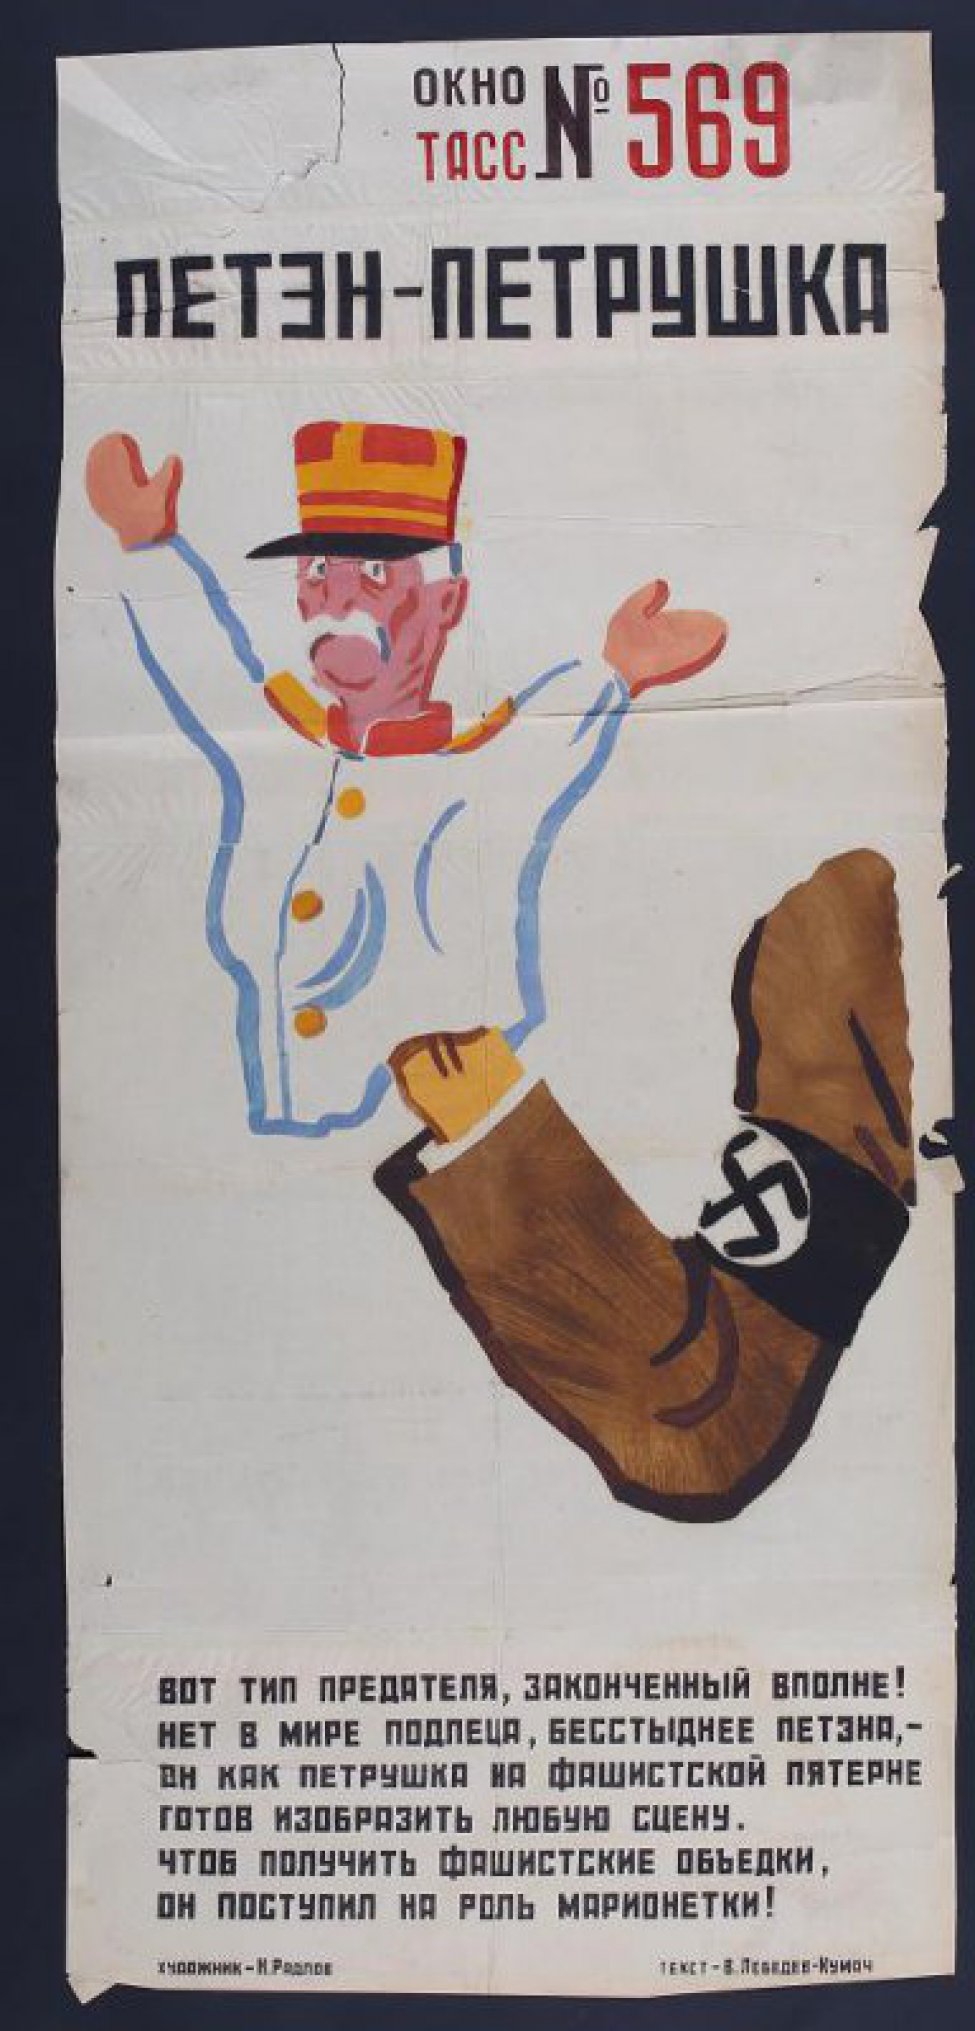 Изображена рука фашиста, которая держит марионетку-Петона. Внизу текст:" Вот тип  предателя законченный вполне! Нет в мире подлеца, бестыднее Петона,..."